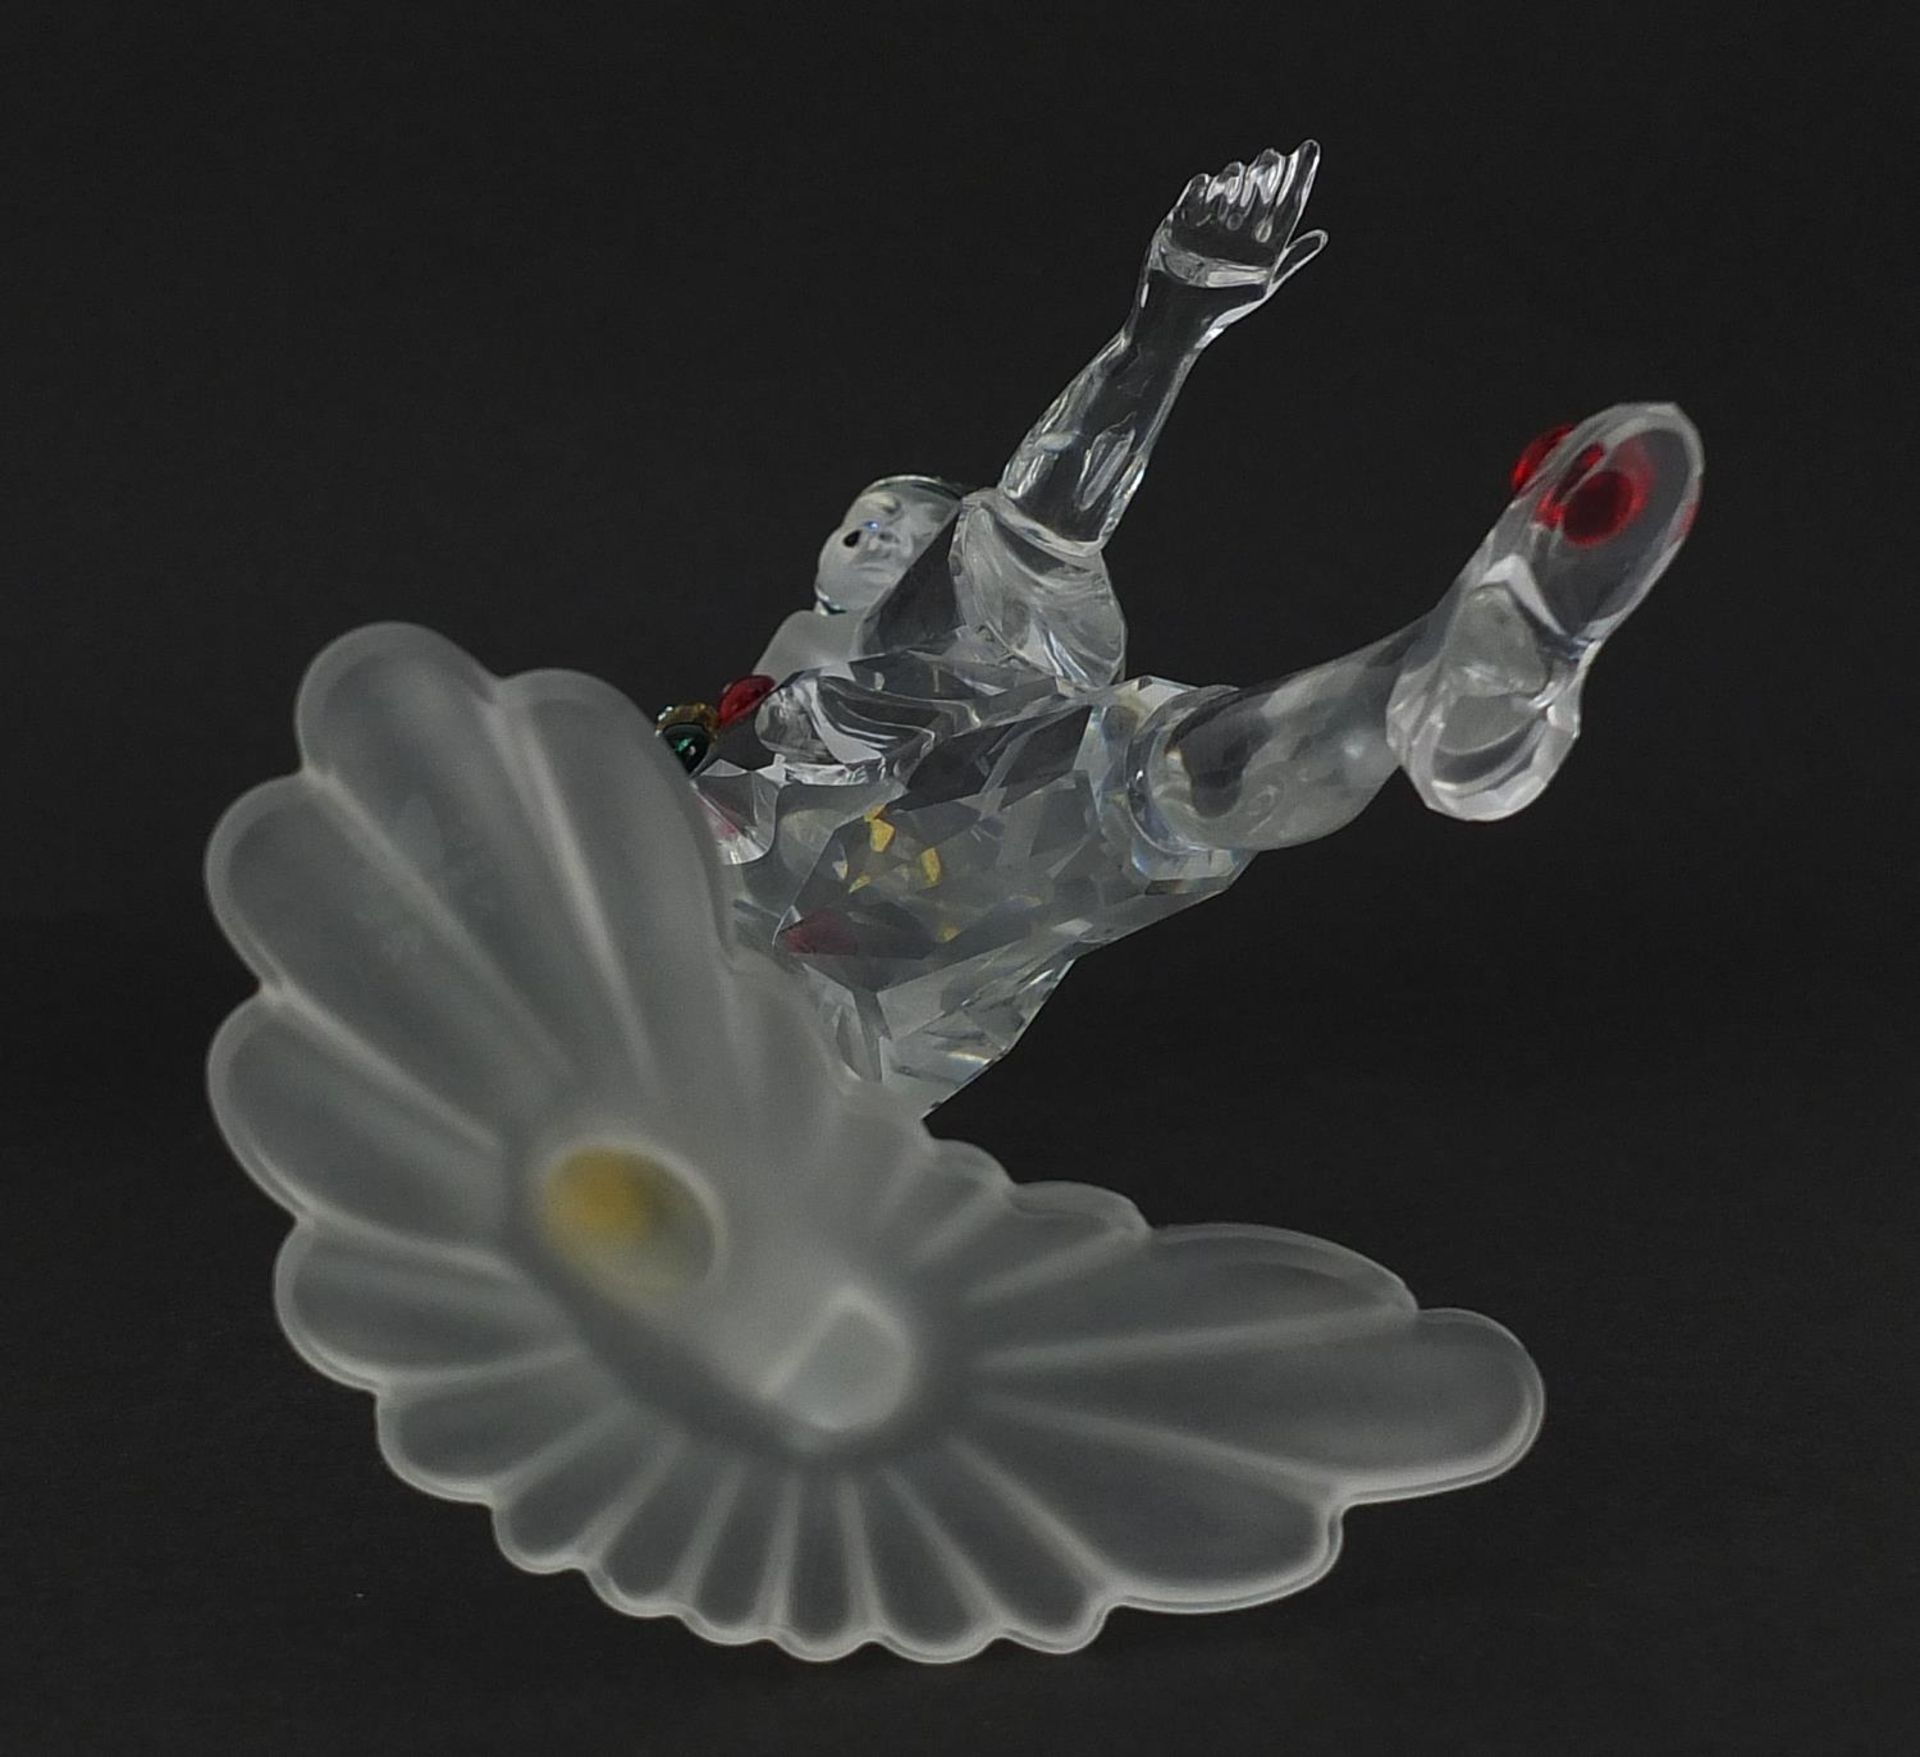 Swarovski crystal Masquerade Pierrot figure with box, 20cm high - Bild 3 aus 6